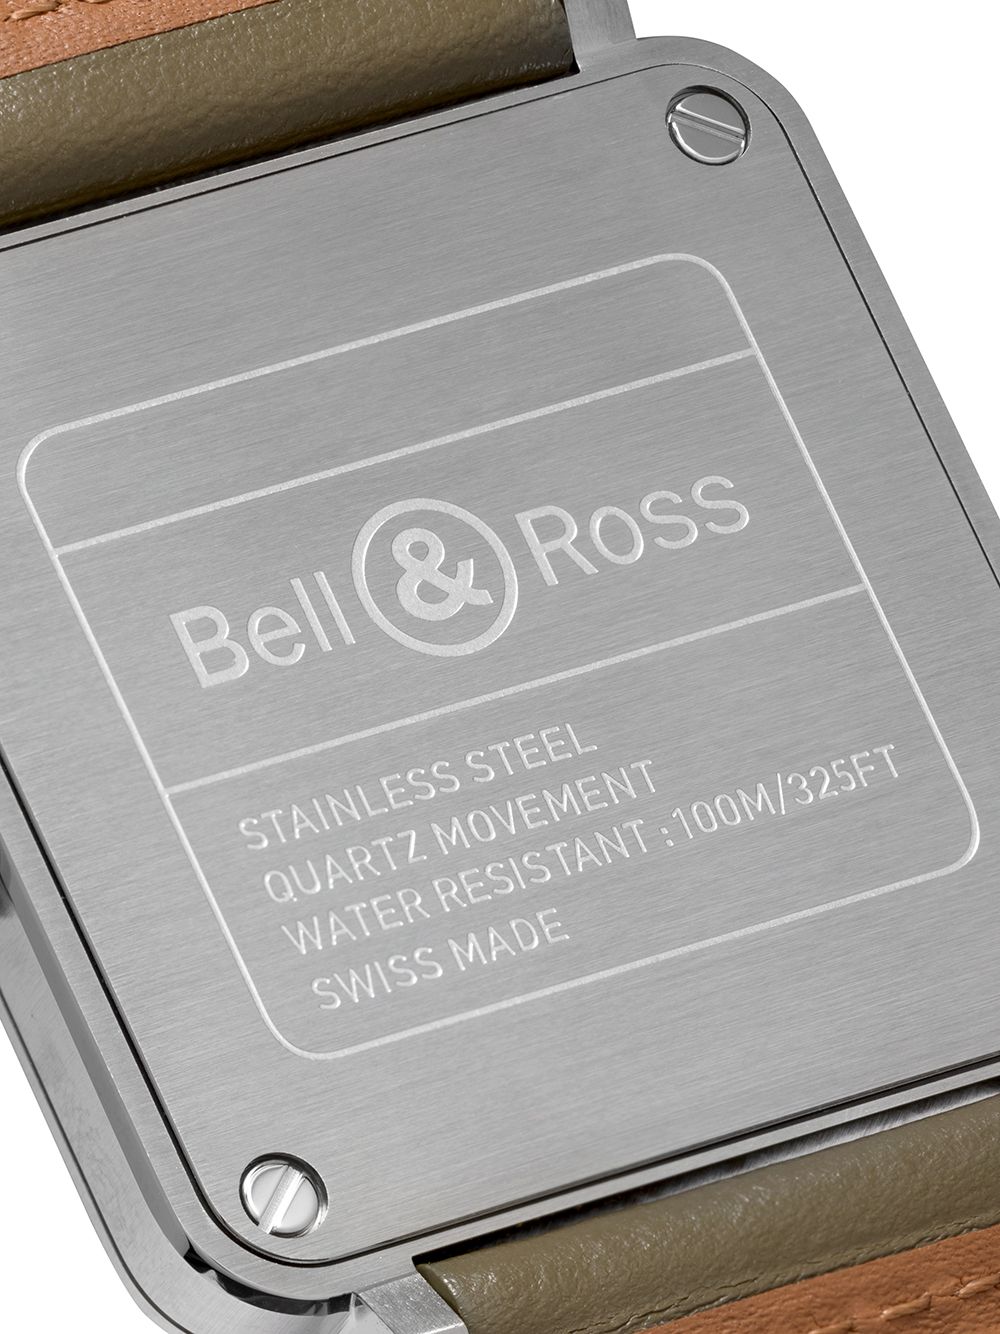 фото Bell & ross наручные часы br-s 39 мм